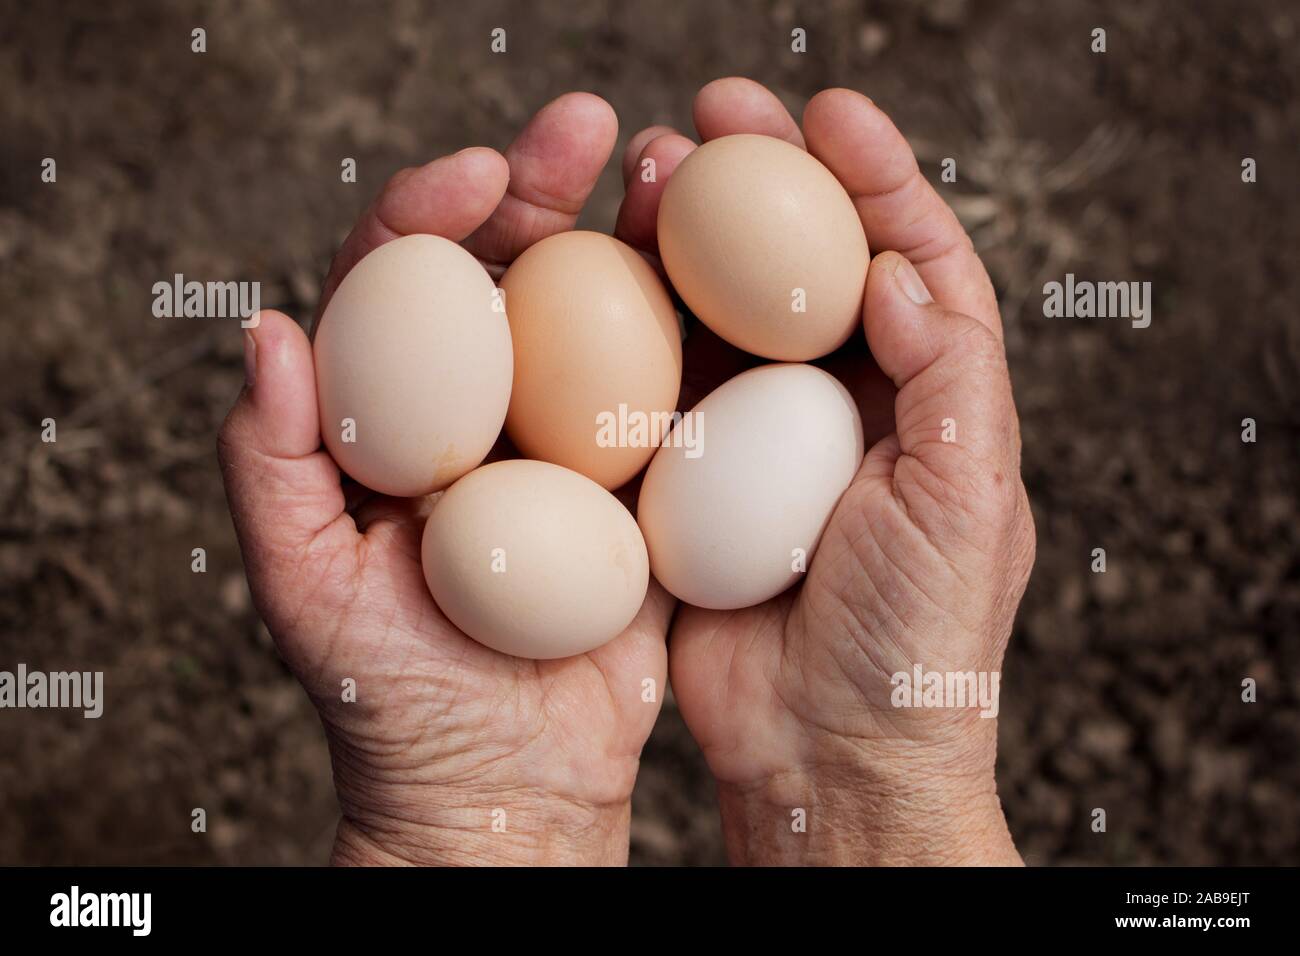 Großmutter hält Eier in die Hände. Inland, organische, natürliche Produkte und Lifestyle. Stockfoto